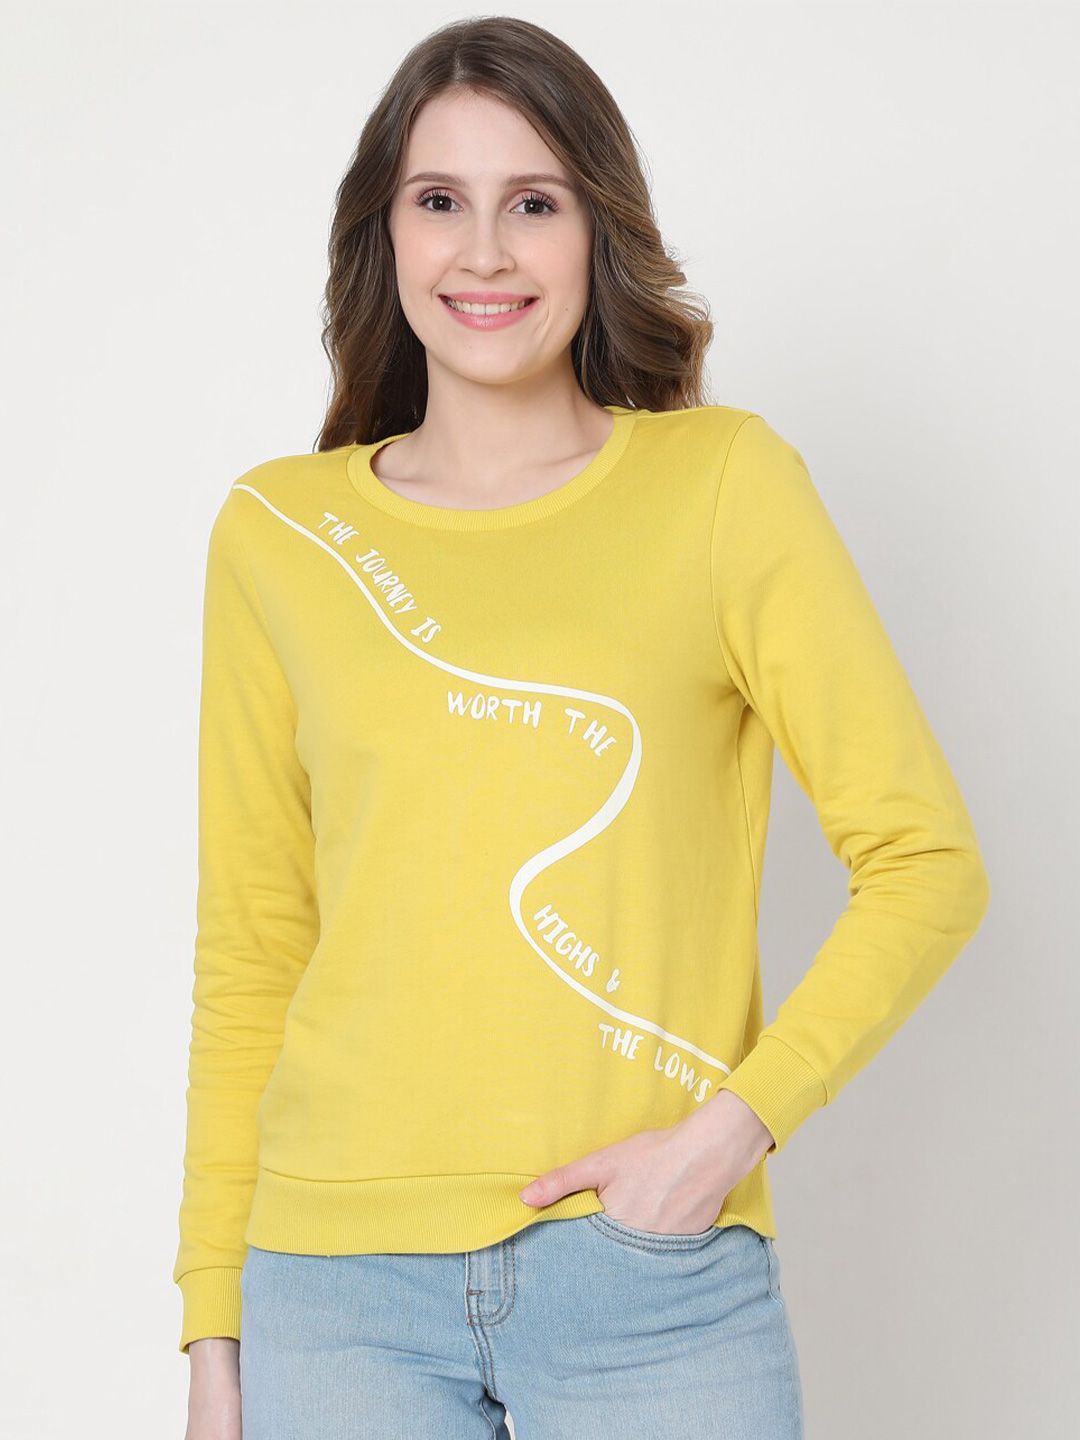 Vero Moda Women Yellow Printed Sweatshirt Price in India